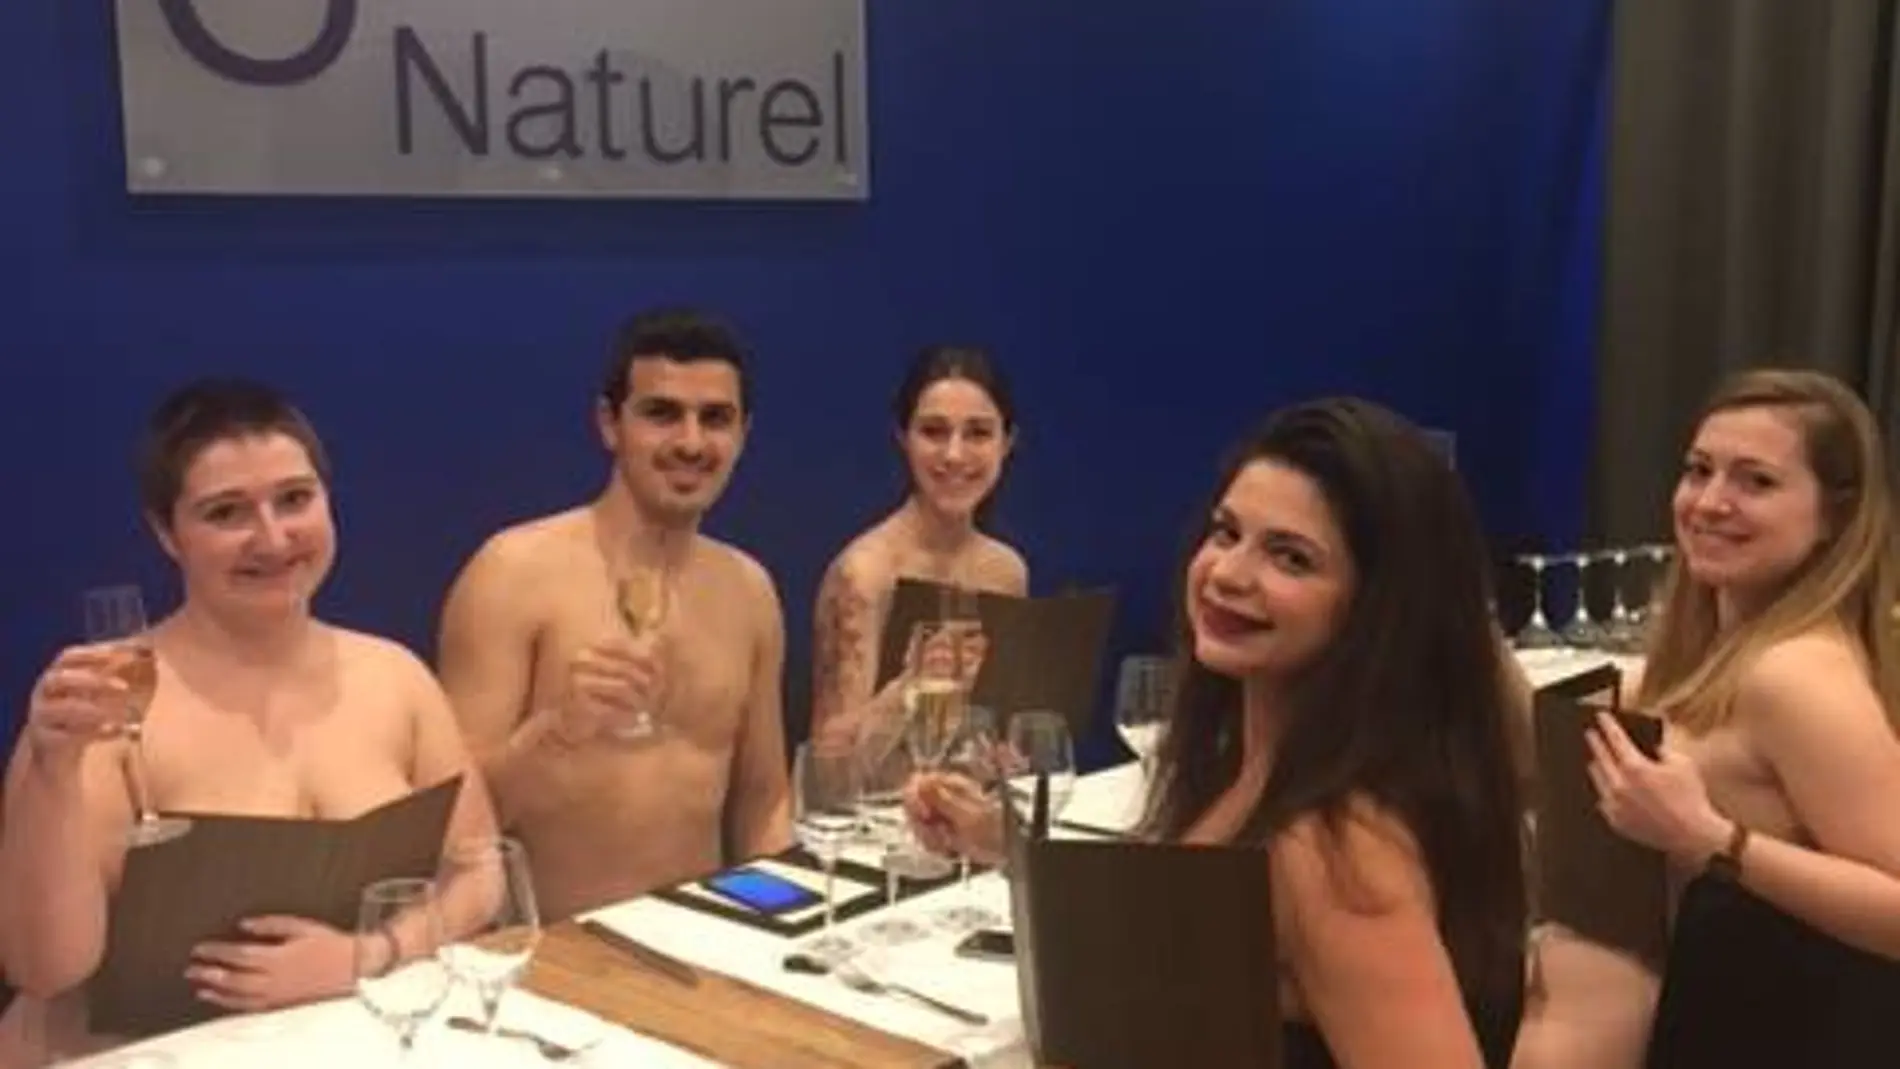 Varios comensales posan desnudos en el restaurante O'Naturel / Facebook